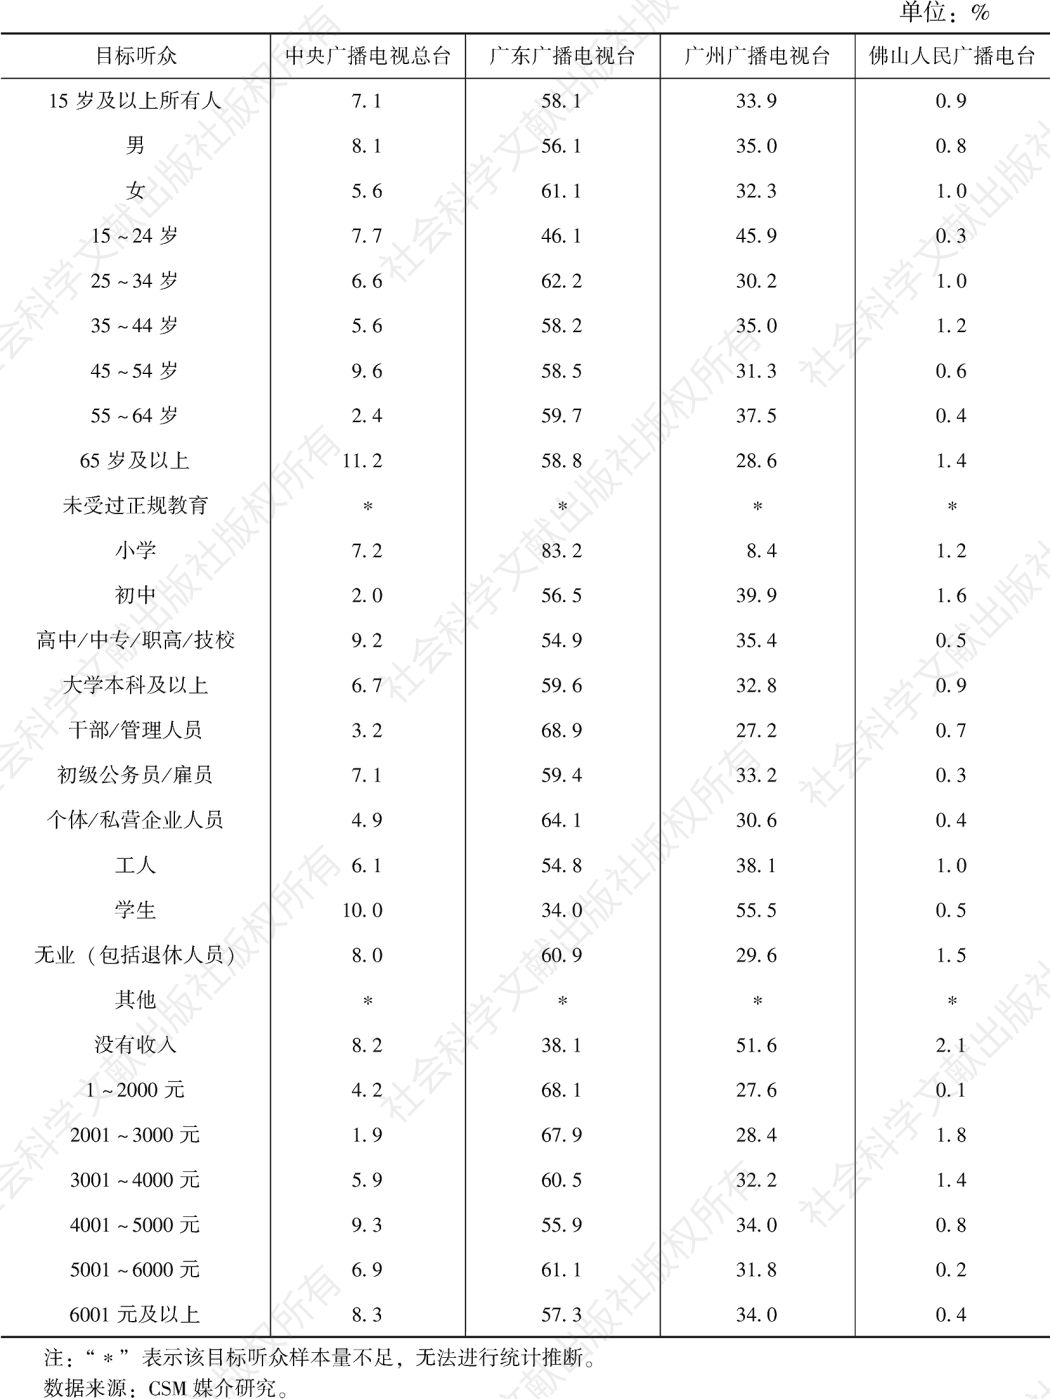 表1.10.6 2021年广州市场各类频率在不同目标听众中的市场份额